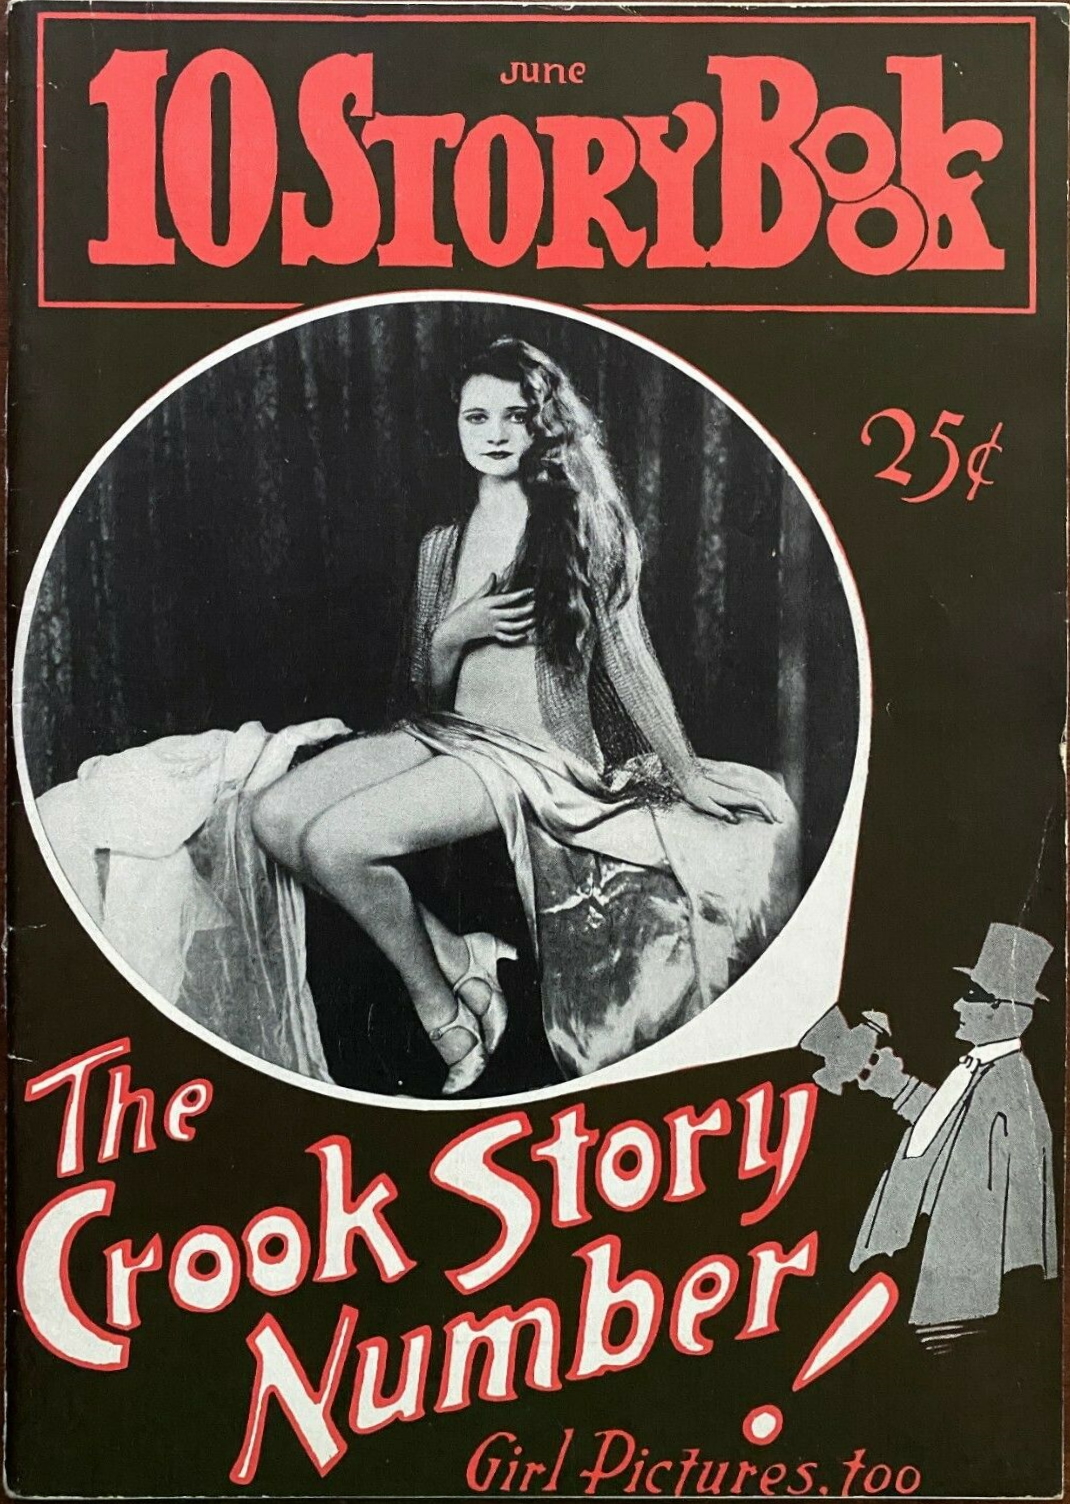 10 Story Book - June 1931